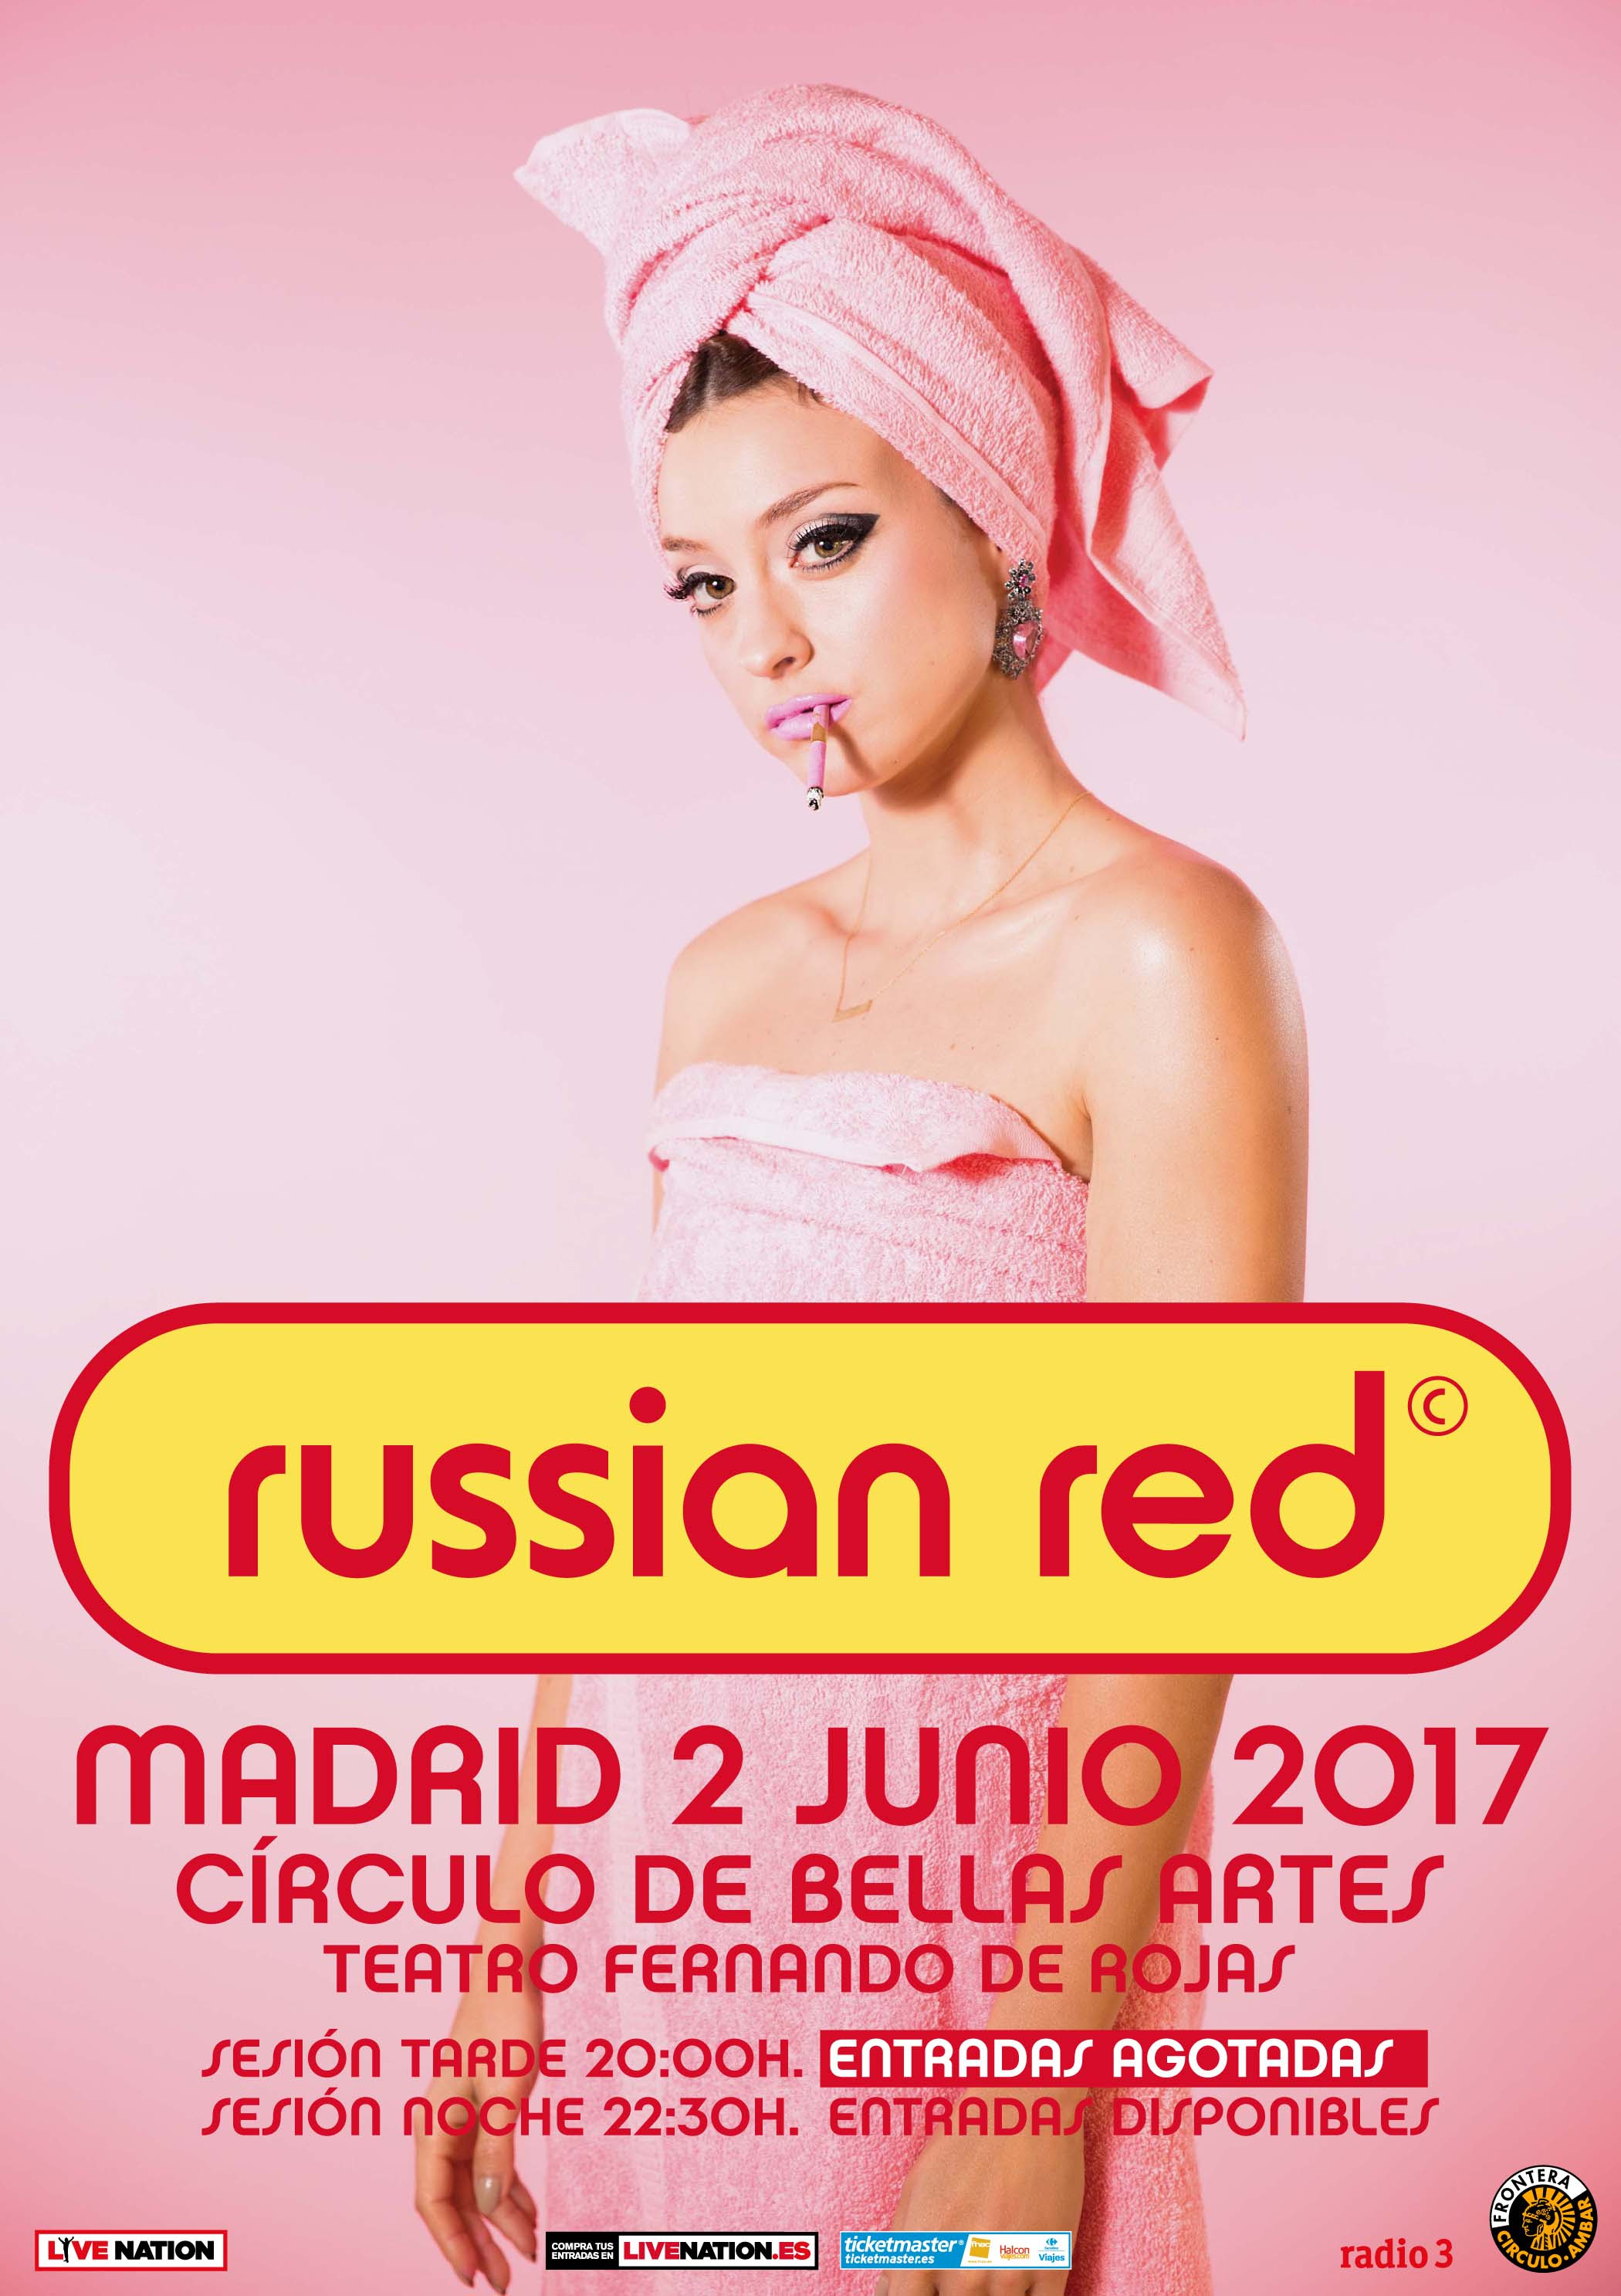 Karaoke de Russian Red ya disponible. russian red presenta karaoke en Madrid dentro de Frontera Circulo Ambar en dos sesinoes el dos de junio